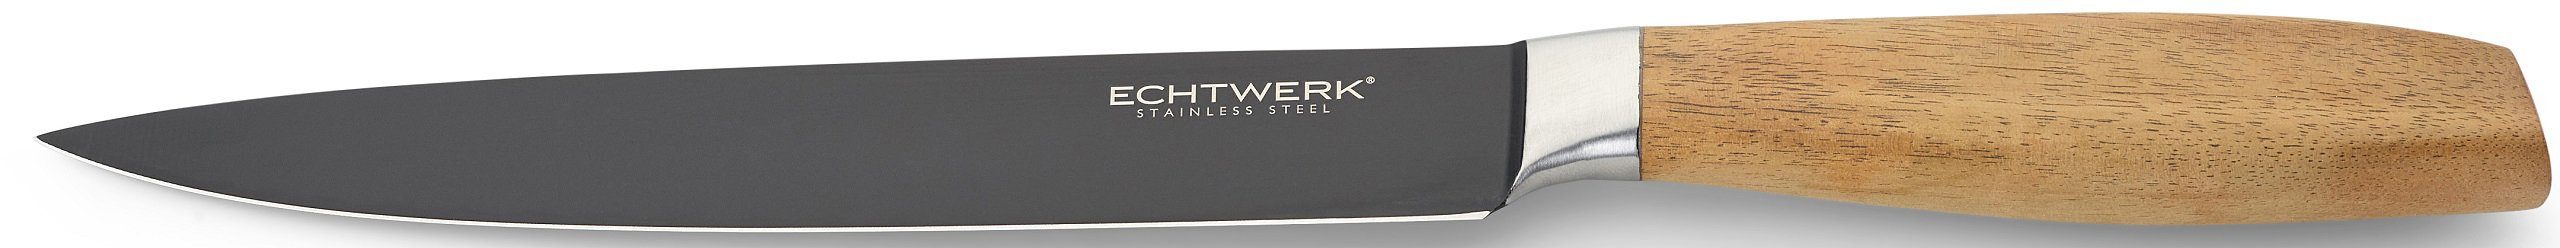 ECHTWERK Fleischmesser Classic, aus hochwertigem cm Stahl, Black-Edition, 20 Akazienholzgriff